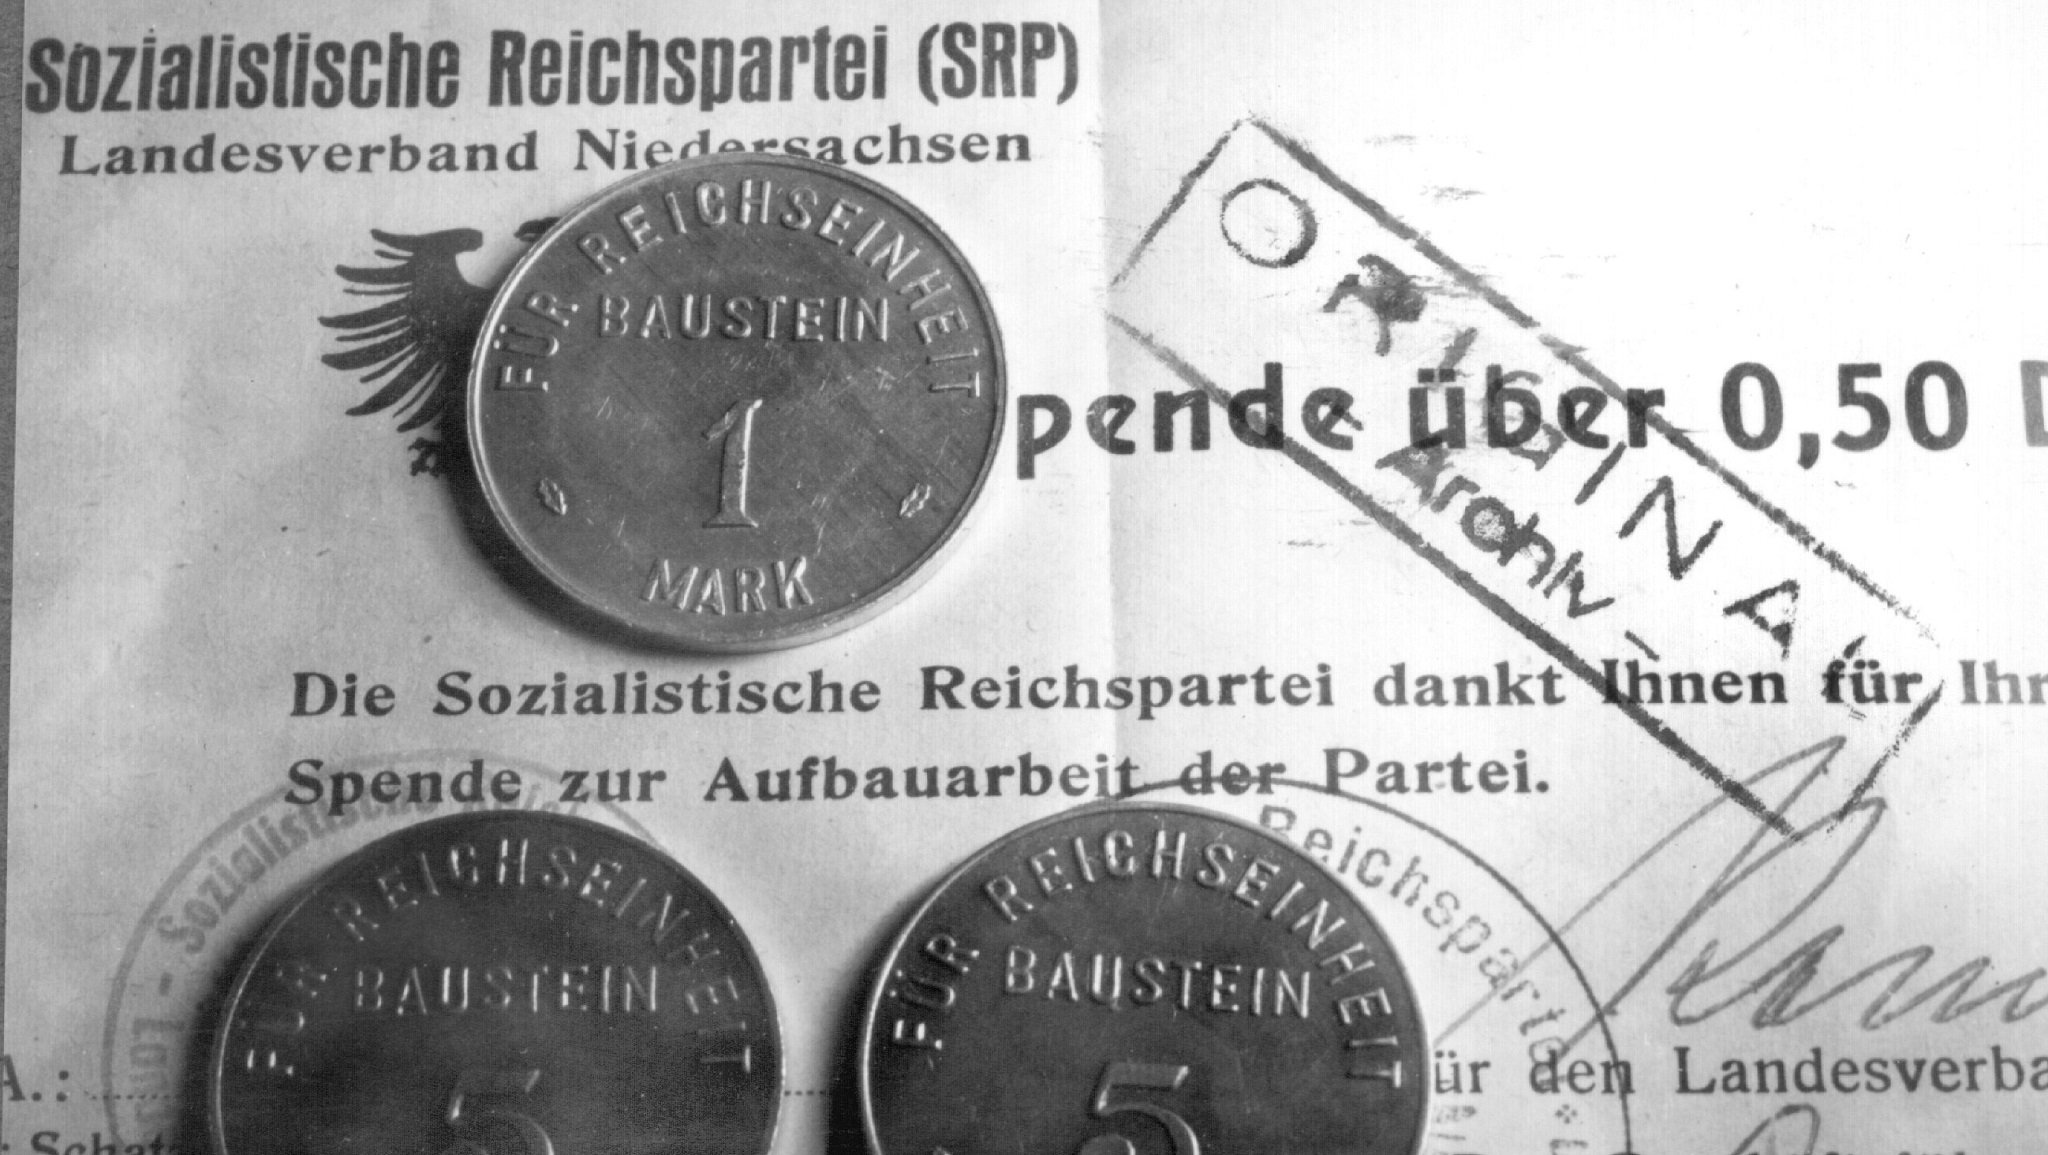 Sogenannte "Parteibausteine" in Form von Münzen und Spendenquittungen, aufgenommen am 20.10.1951